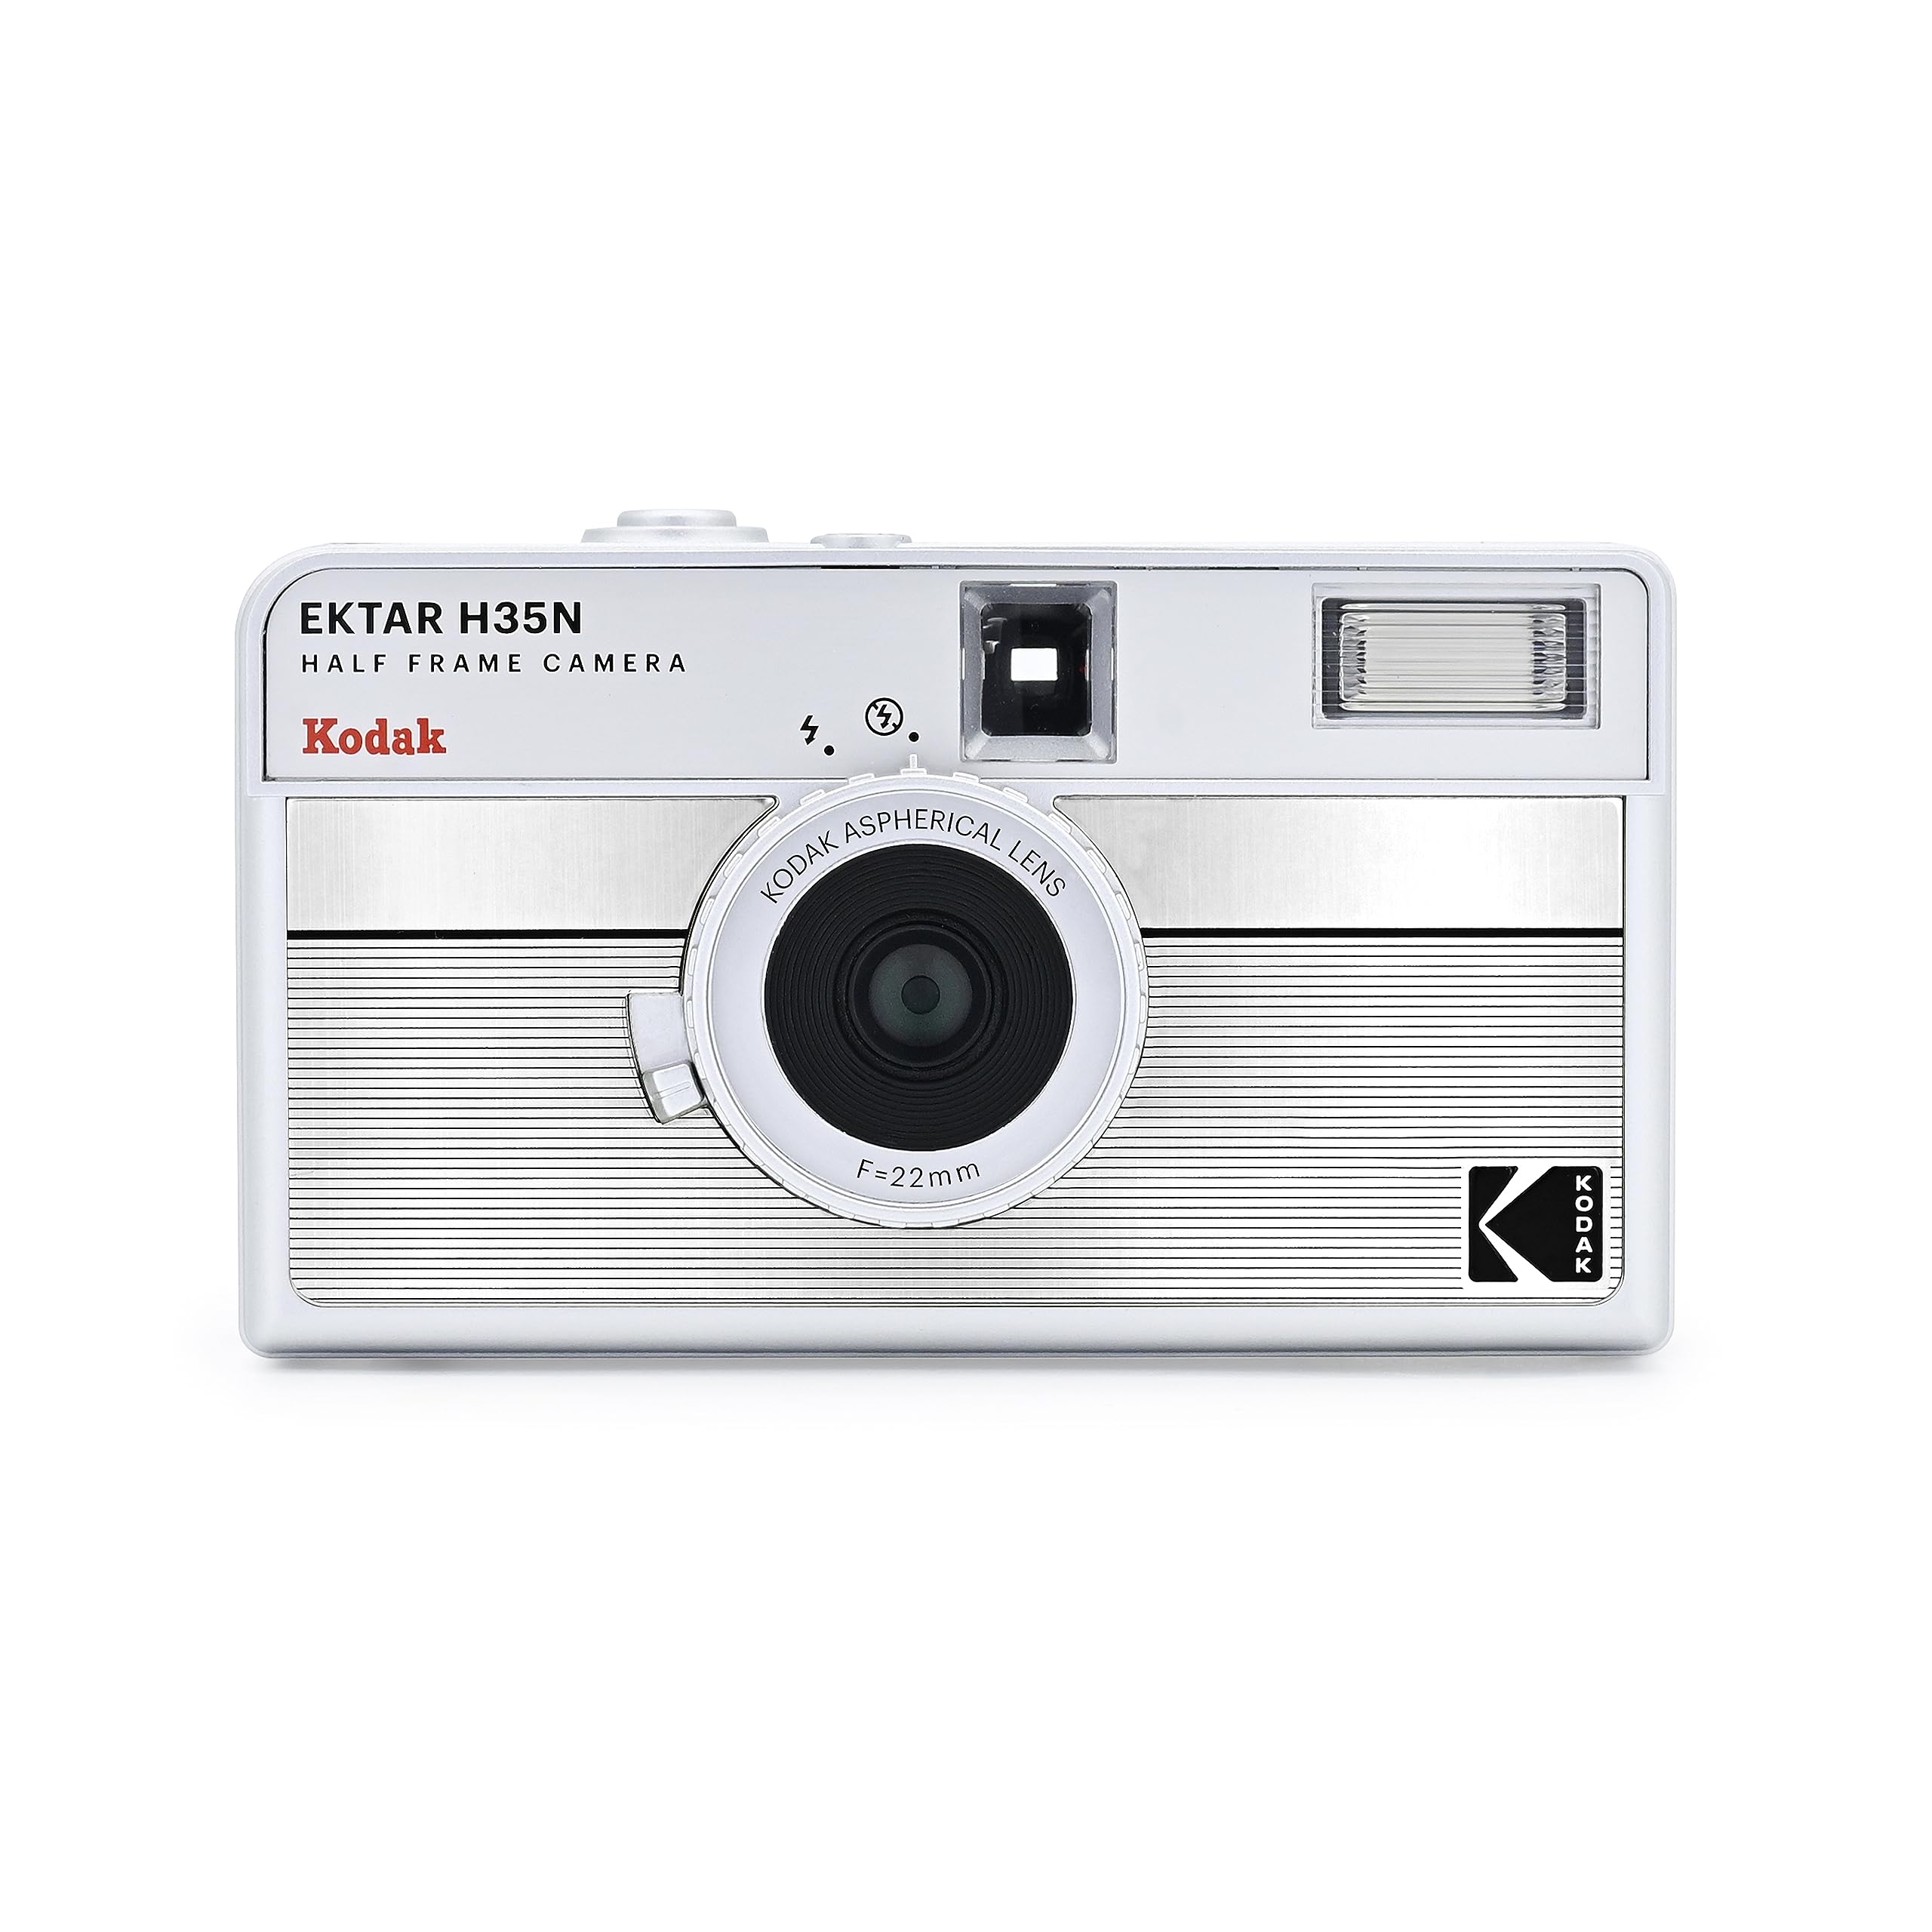 KODAK EKTAR H35N Halbformat-Filmkamera, 35 mm, wiederverwendbar, Bulb-Funktion, Sternfilter, beschichtetes, Objektiv (Film und Batterie sind Nicht im Lieferumfang enthalten) (Gestreiftes Silber)